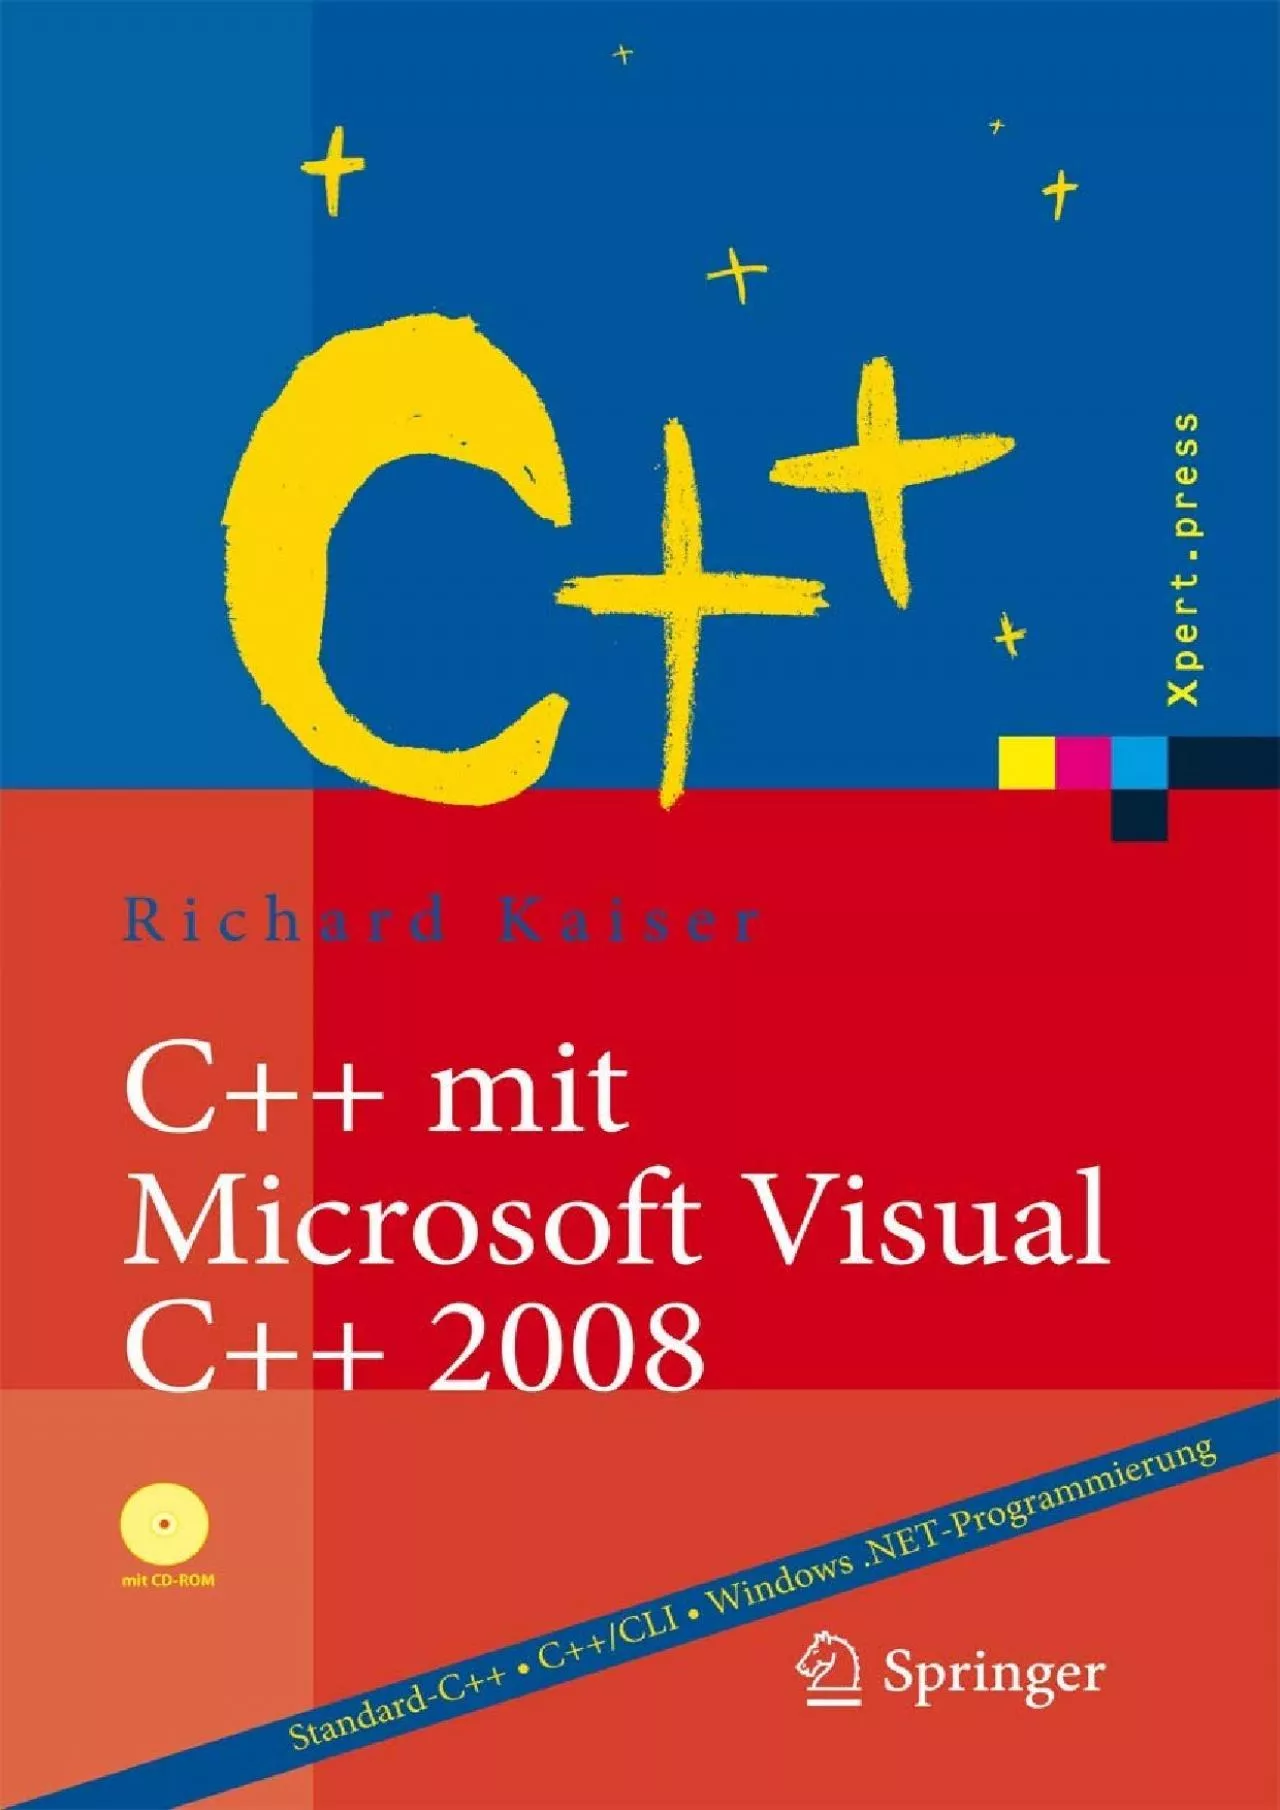 [BEST]-C++ mit Microsoft Visual C++ 2008: Einführung in Standard-C++, C++/CLI und die